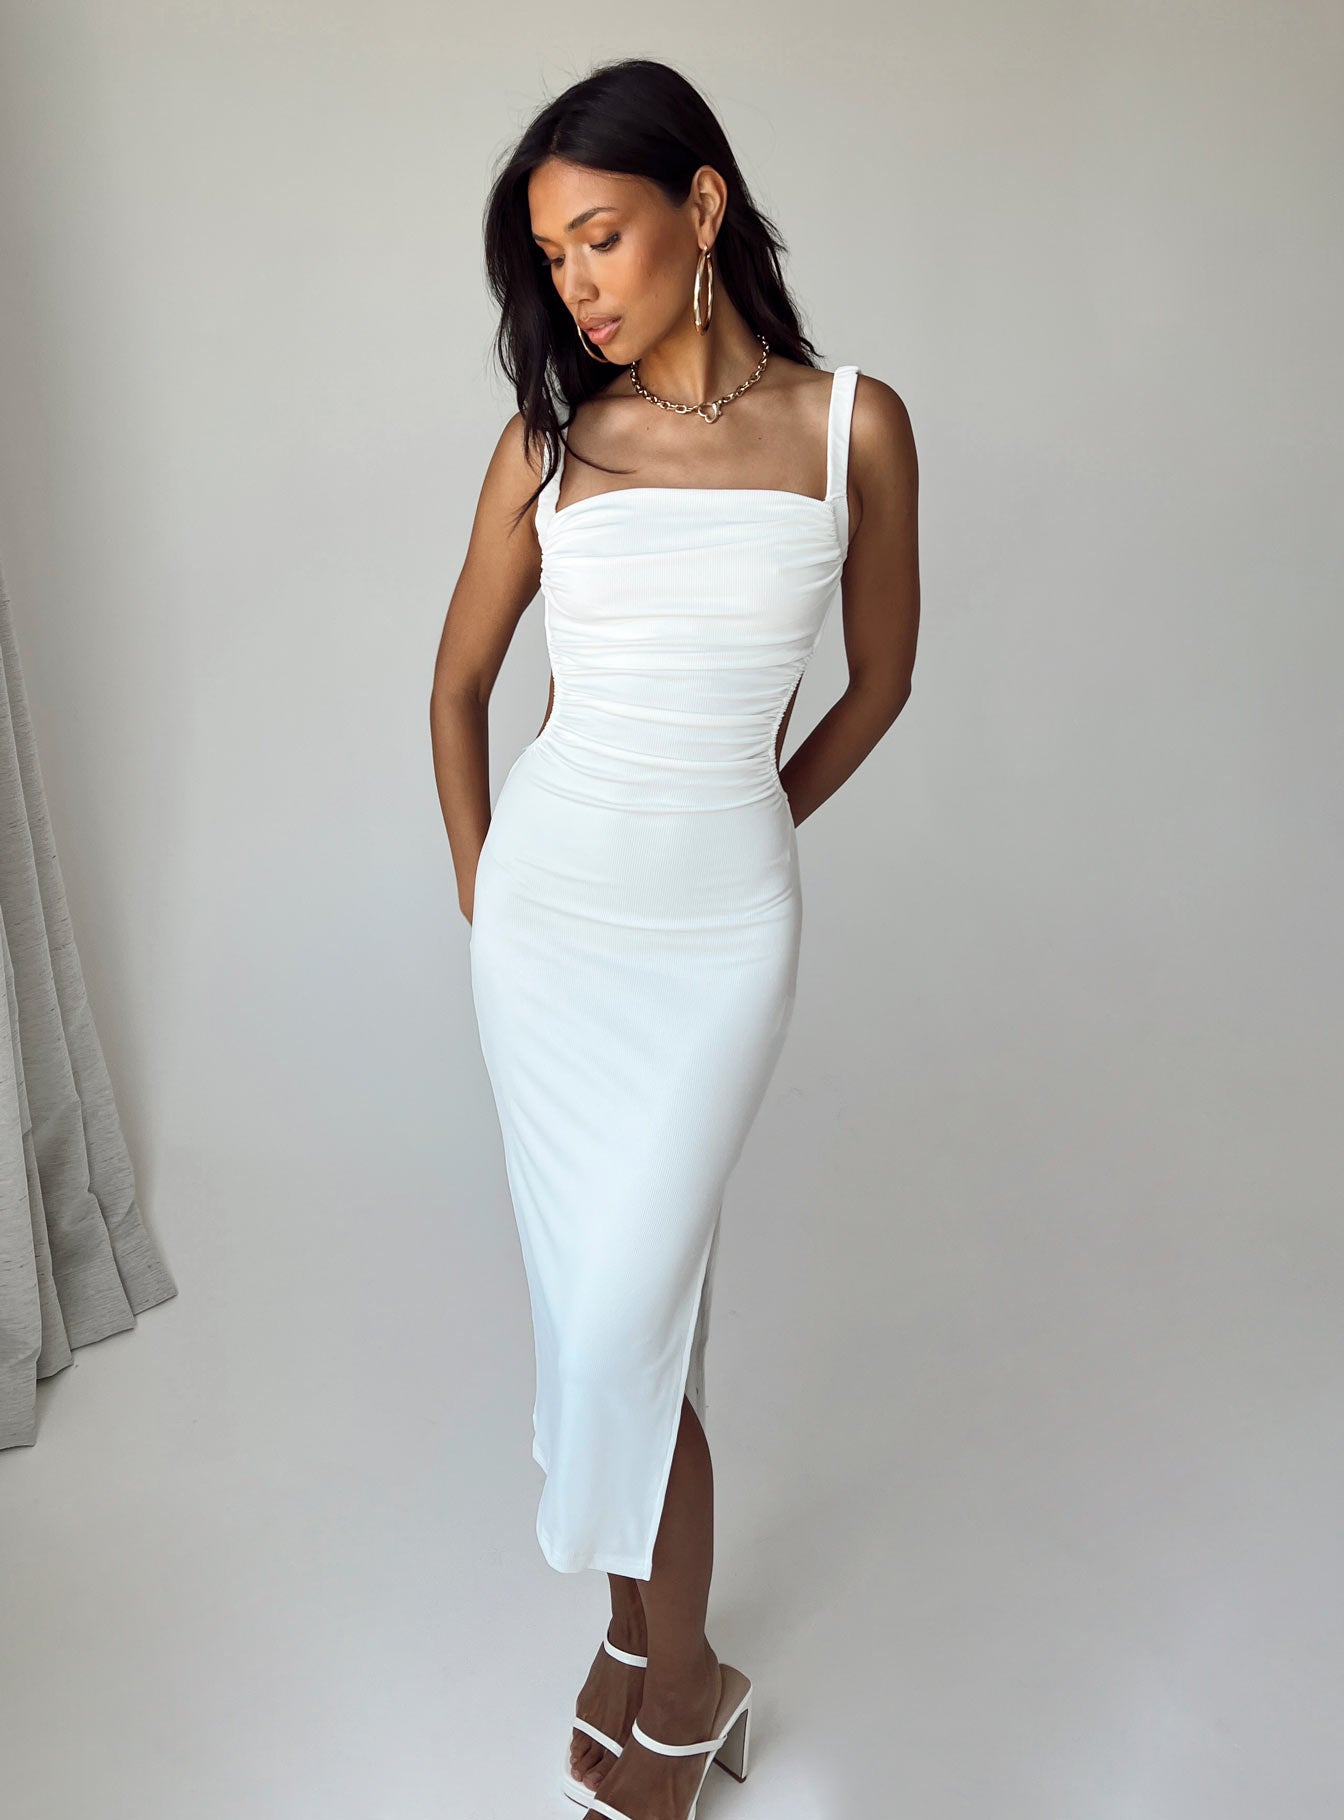 midi white dress